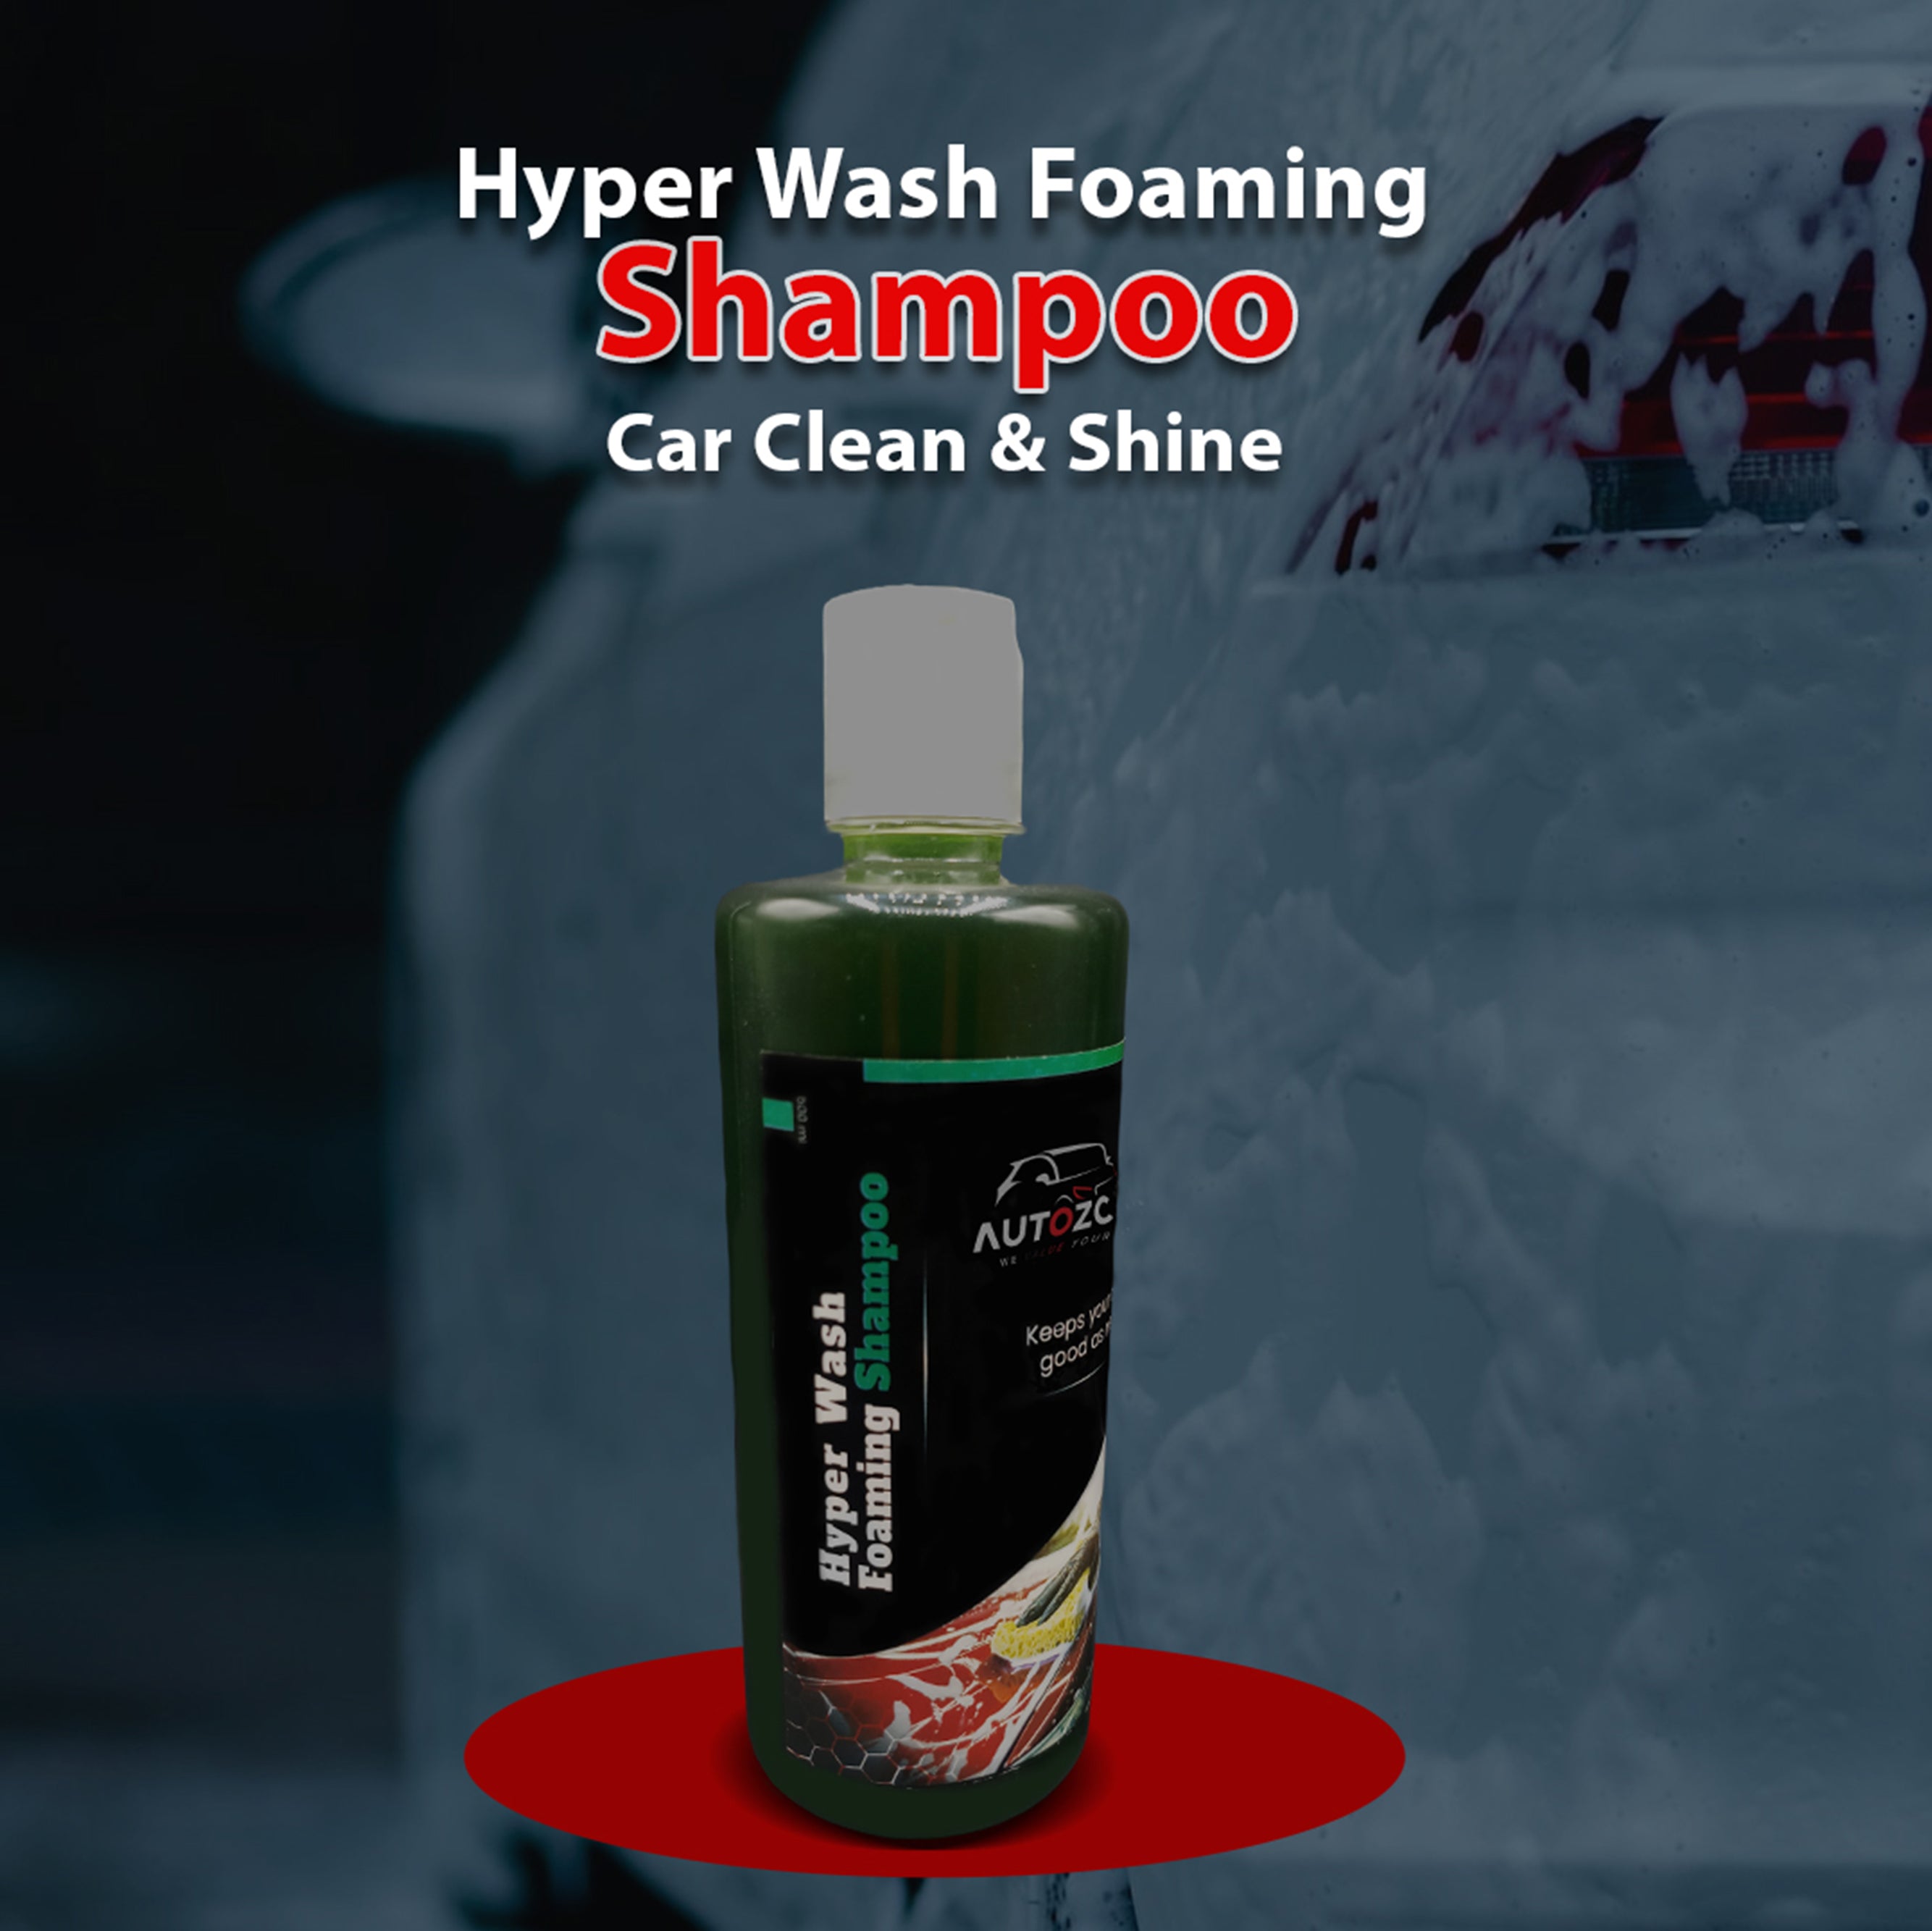 Hyper Wash Foaming Shampoo